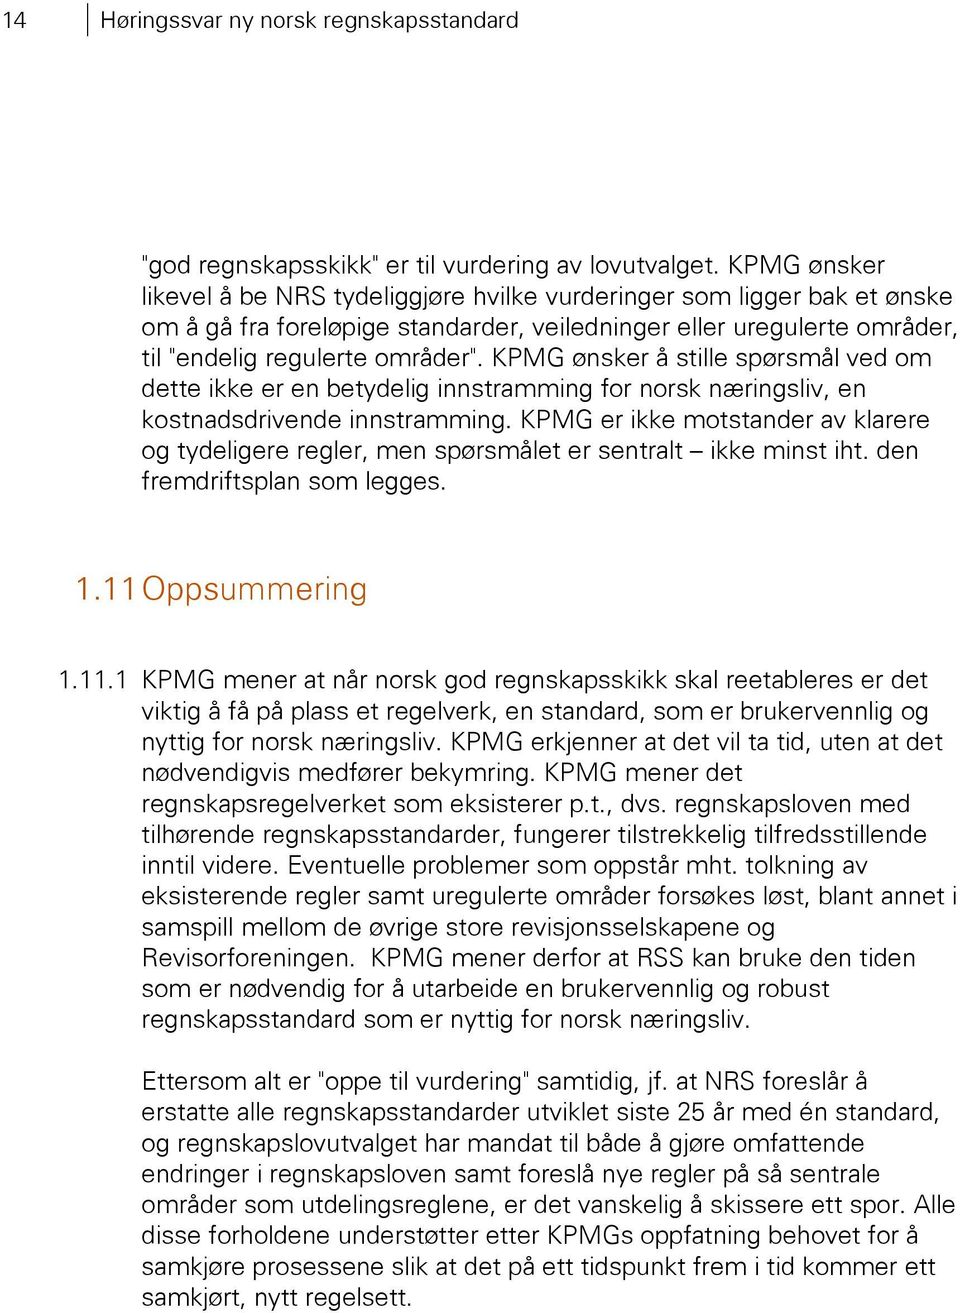 KPMG ønsker å stille spørsmål ved om dette ikke er en betydelig innstramming for norsk næringsliv, en kostnadsdrivende innstramming.